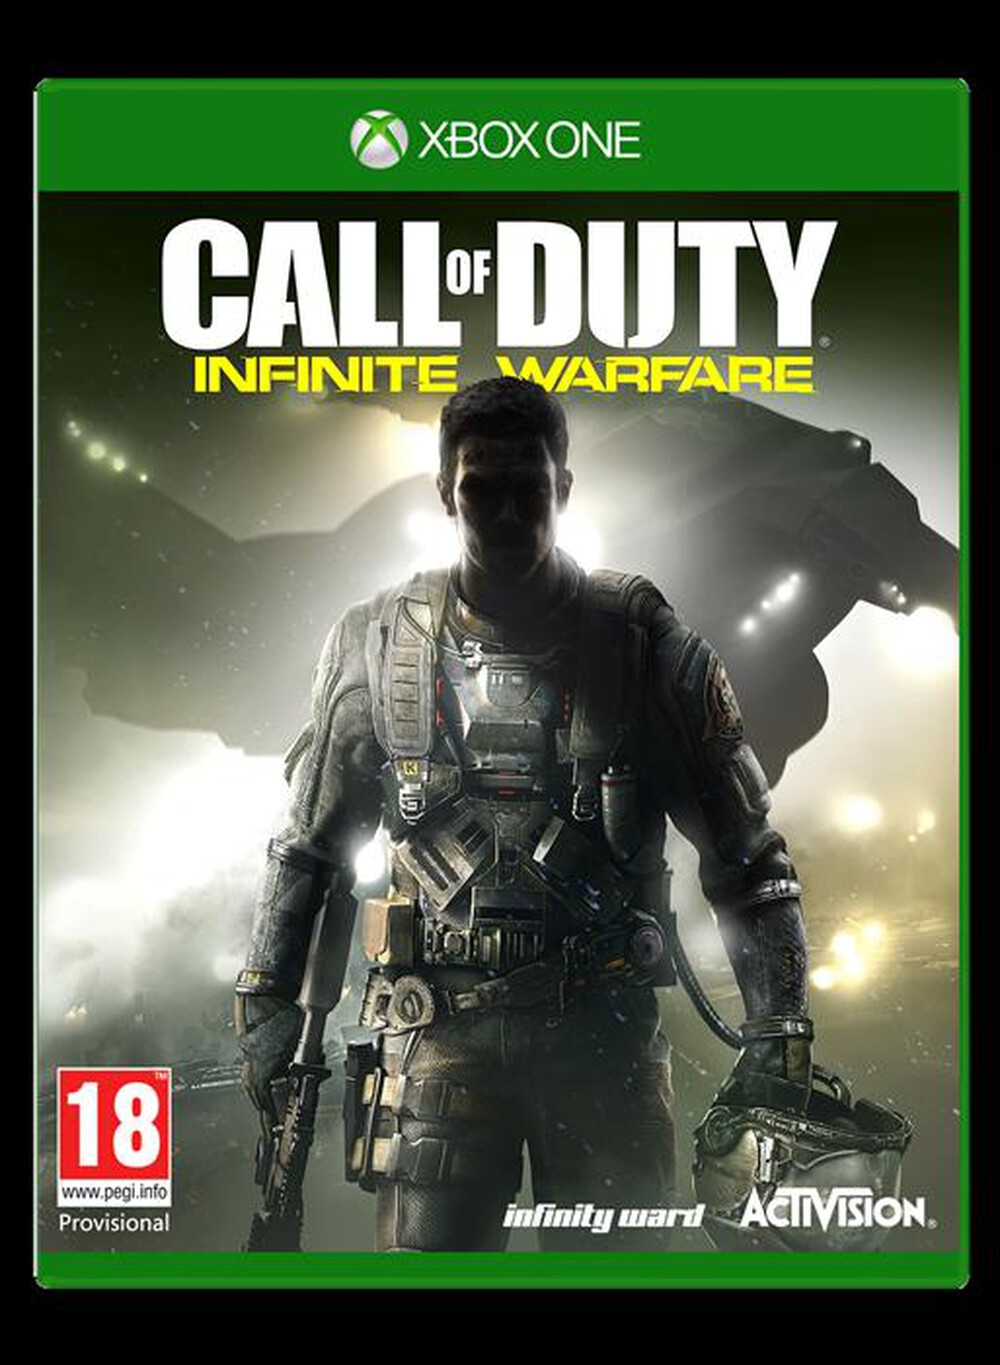 "ACTIVISION-BLIZZARD - Call of Duty: Infinite Warfare Xbox One"